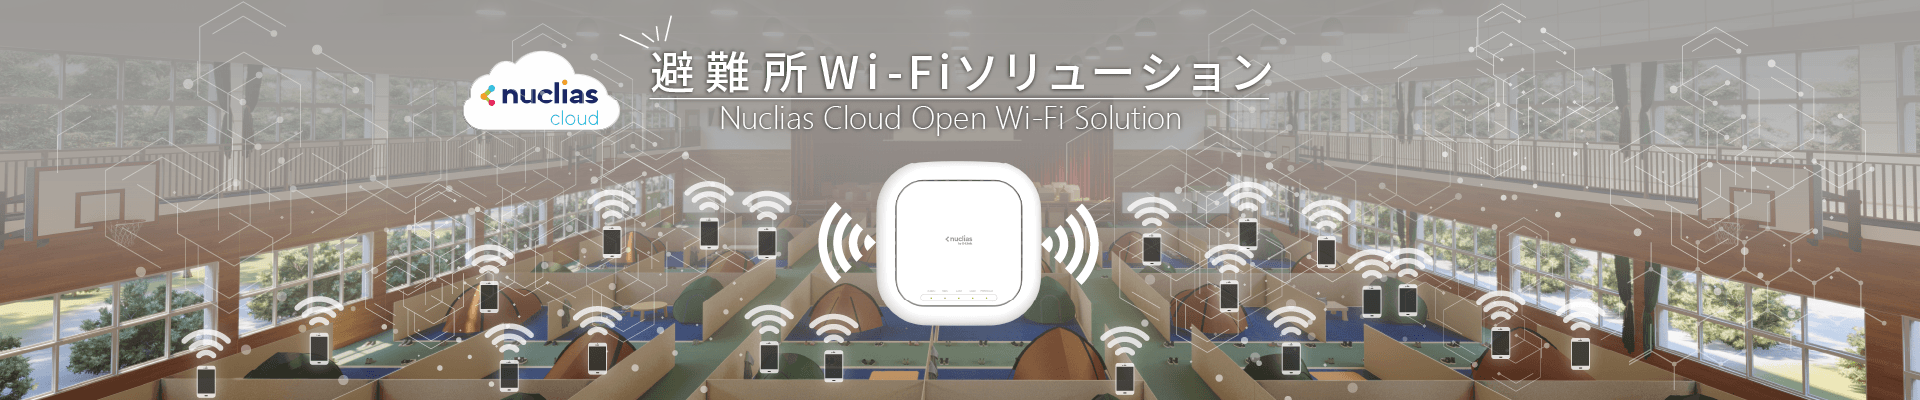 D-Linkのクラウド統合管理型ネットワークプラットフォームを活用した避難所Wi-Fiソリューションをご紹介します。